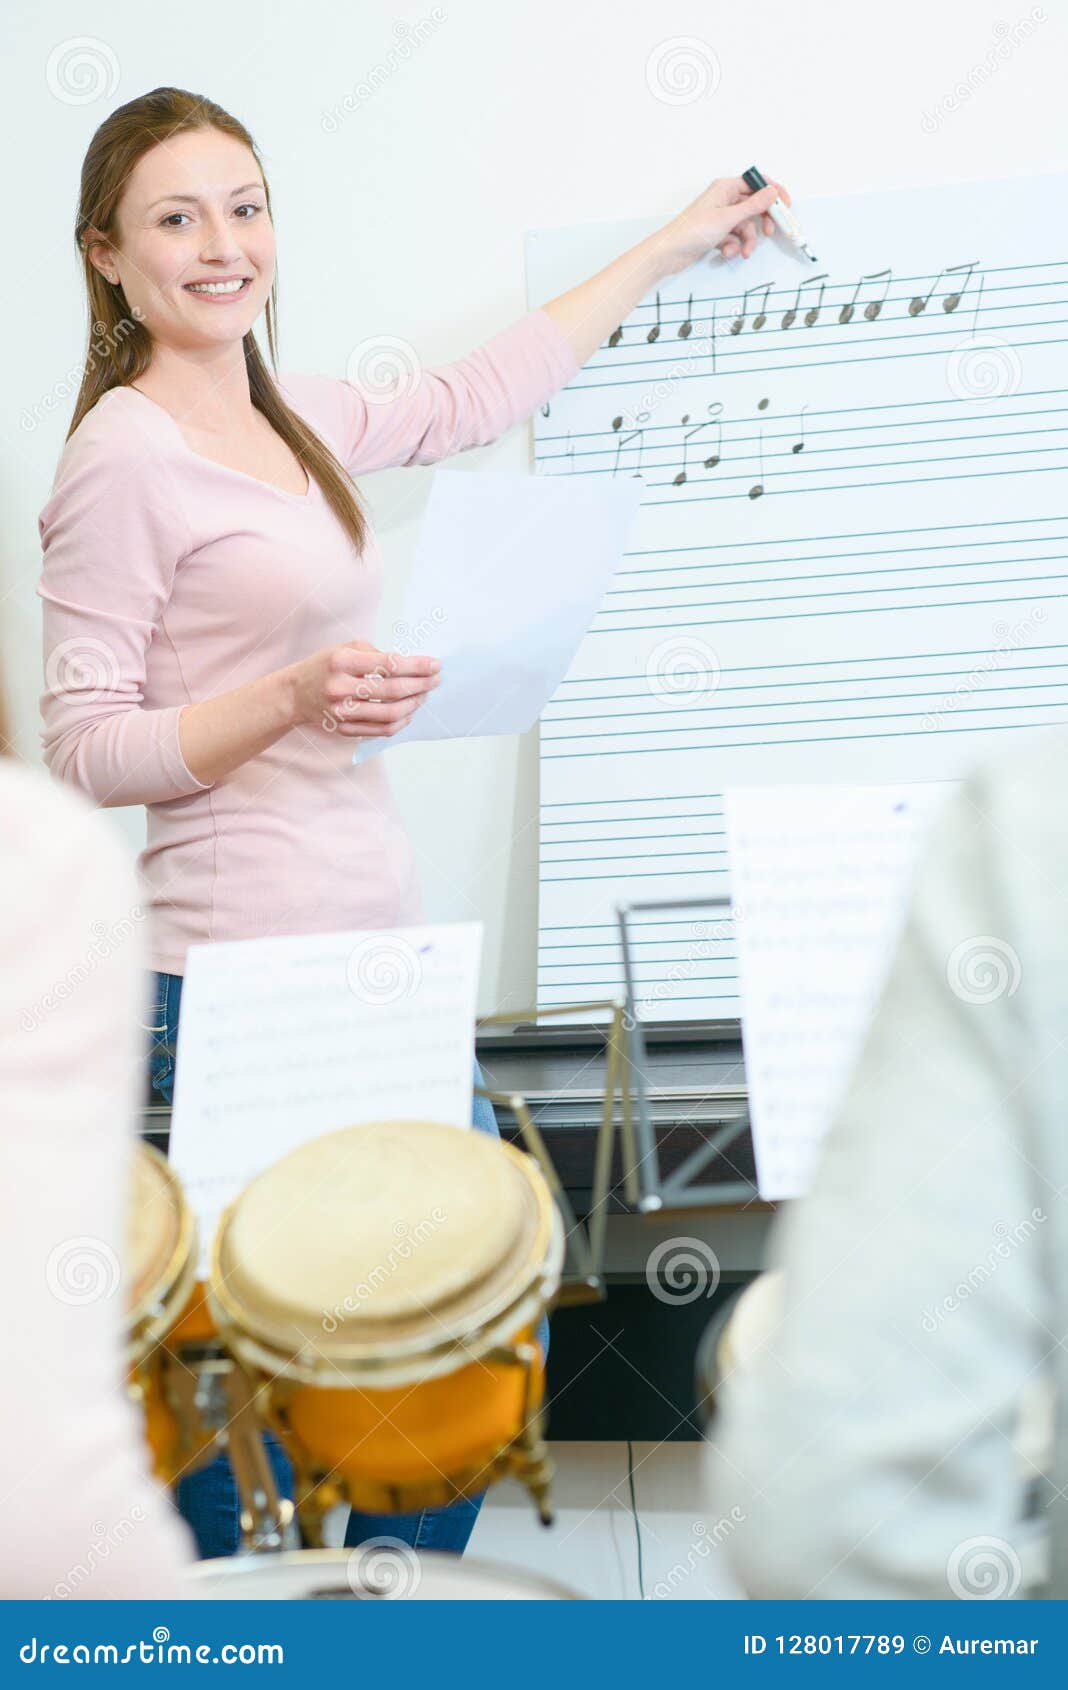 Music teacher job availability